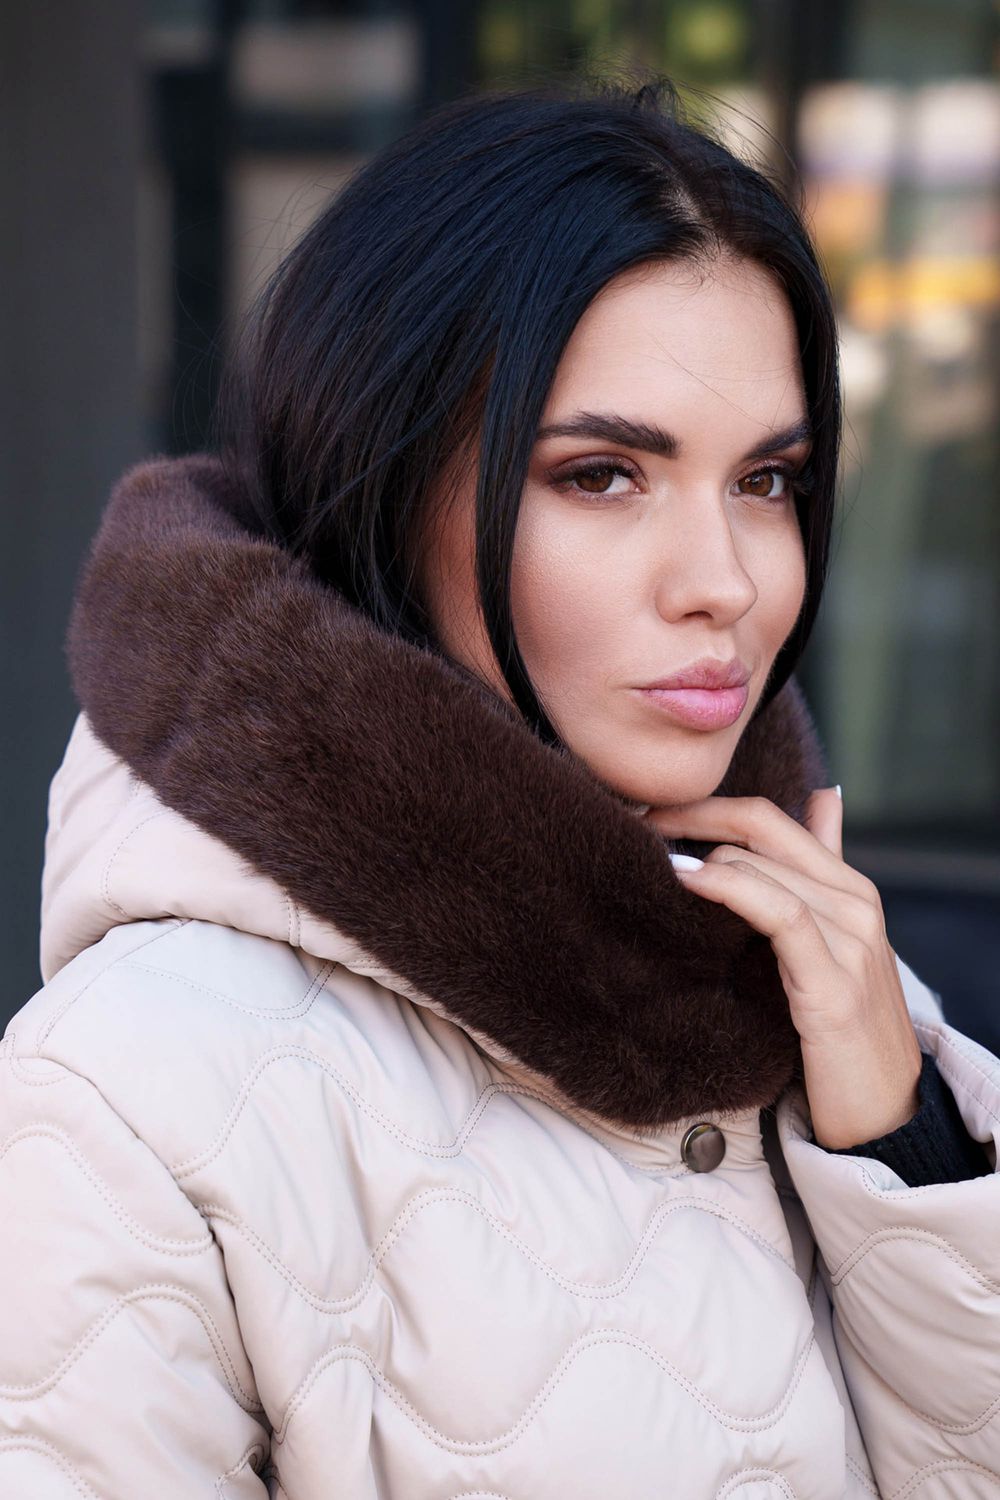 Зимнее стеганое пальто бежевого цвета с мехом - фото